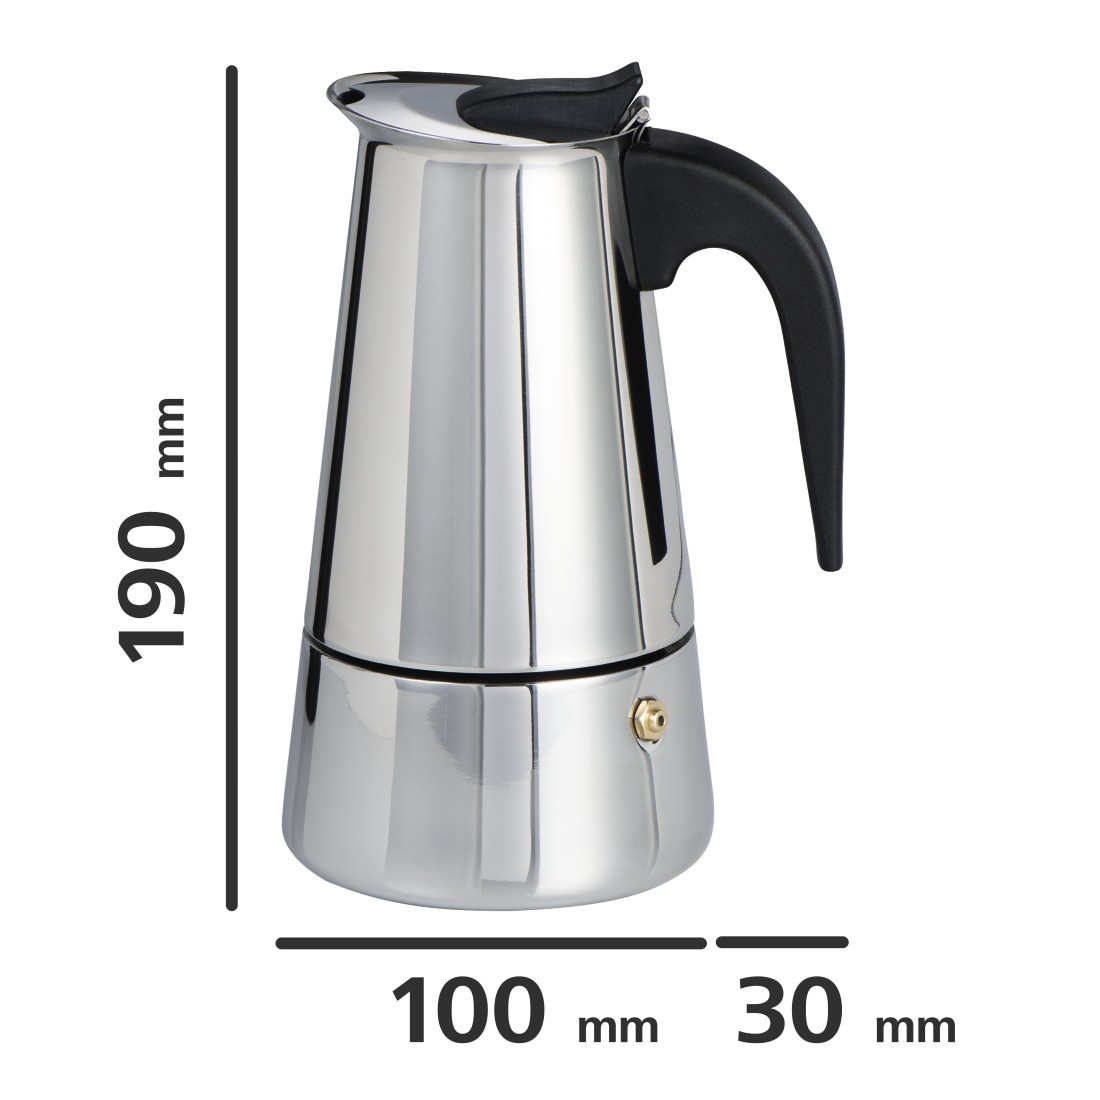 dex3 Druckfähiges Detail 3 - Xavax, Espressokocher aus Edelstahl, 250 ml, geeignet für Induktion